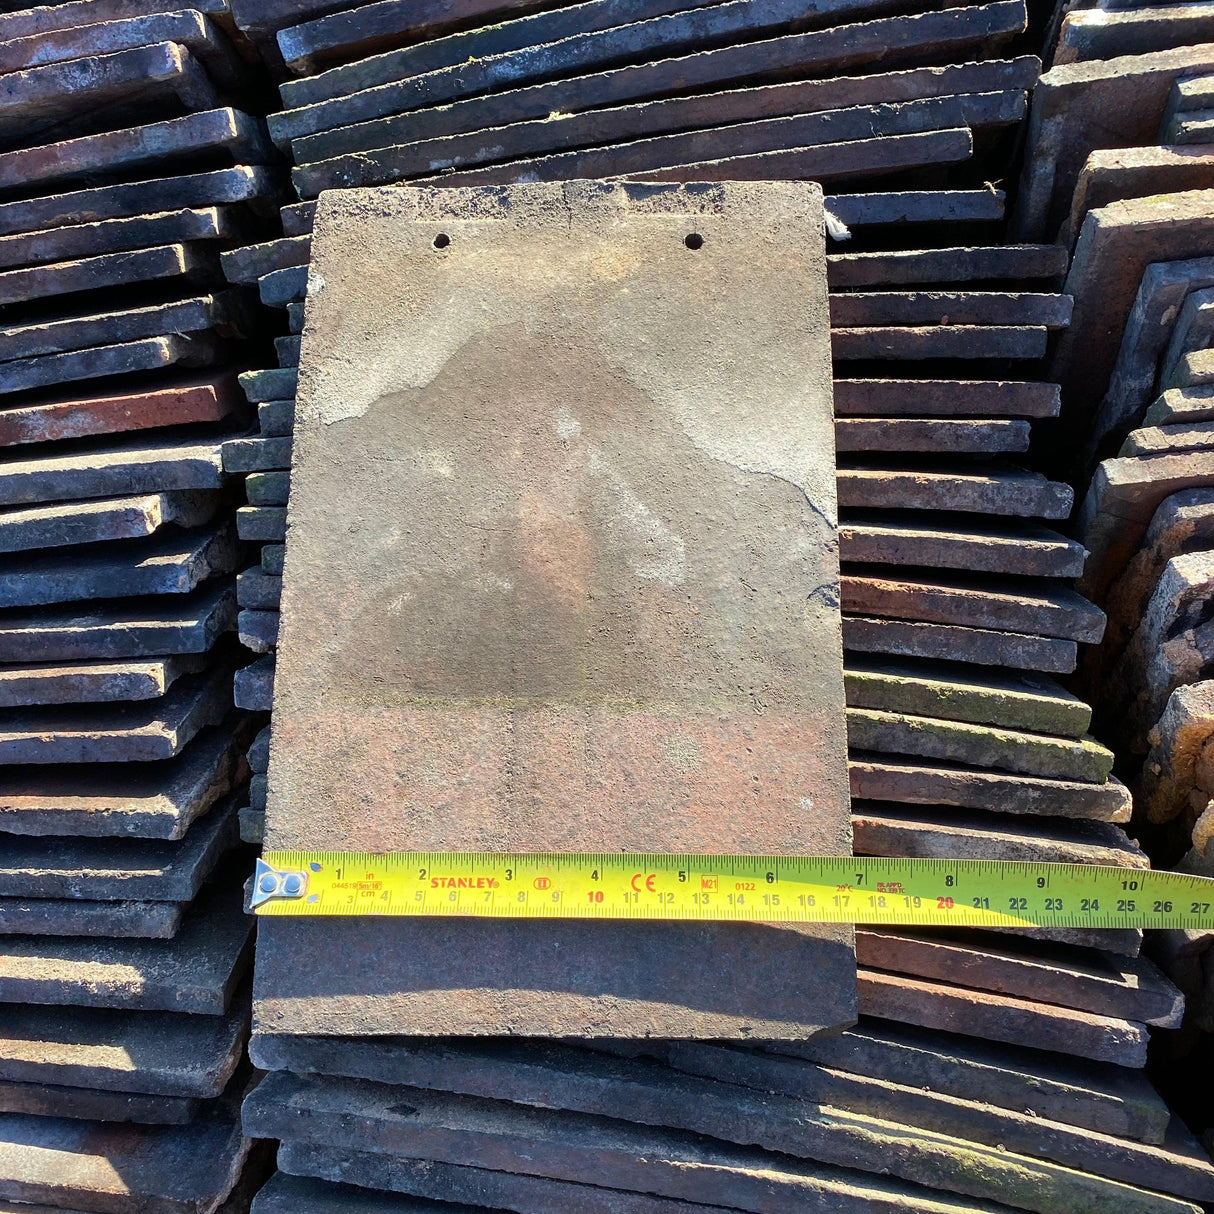 Reclaimed Clay Roof Tiles (Like Rosemary’s) - Reclaimed Brick Company